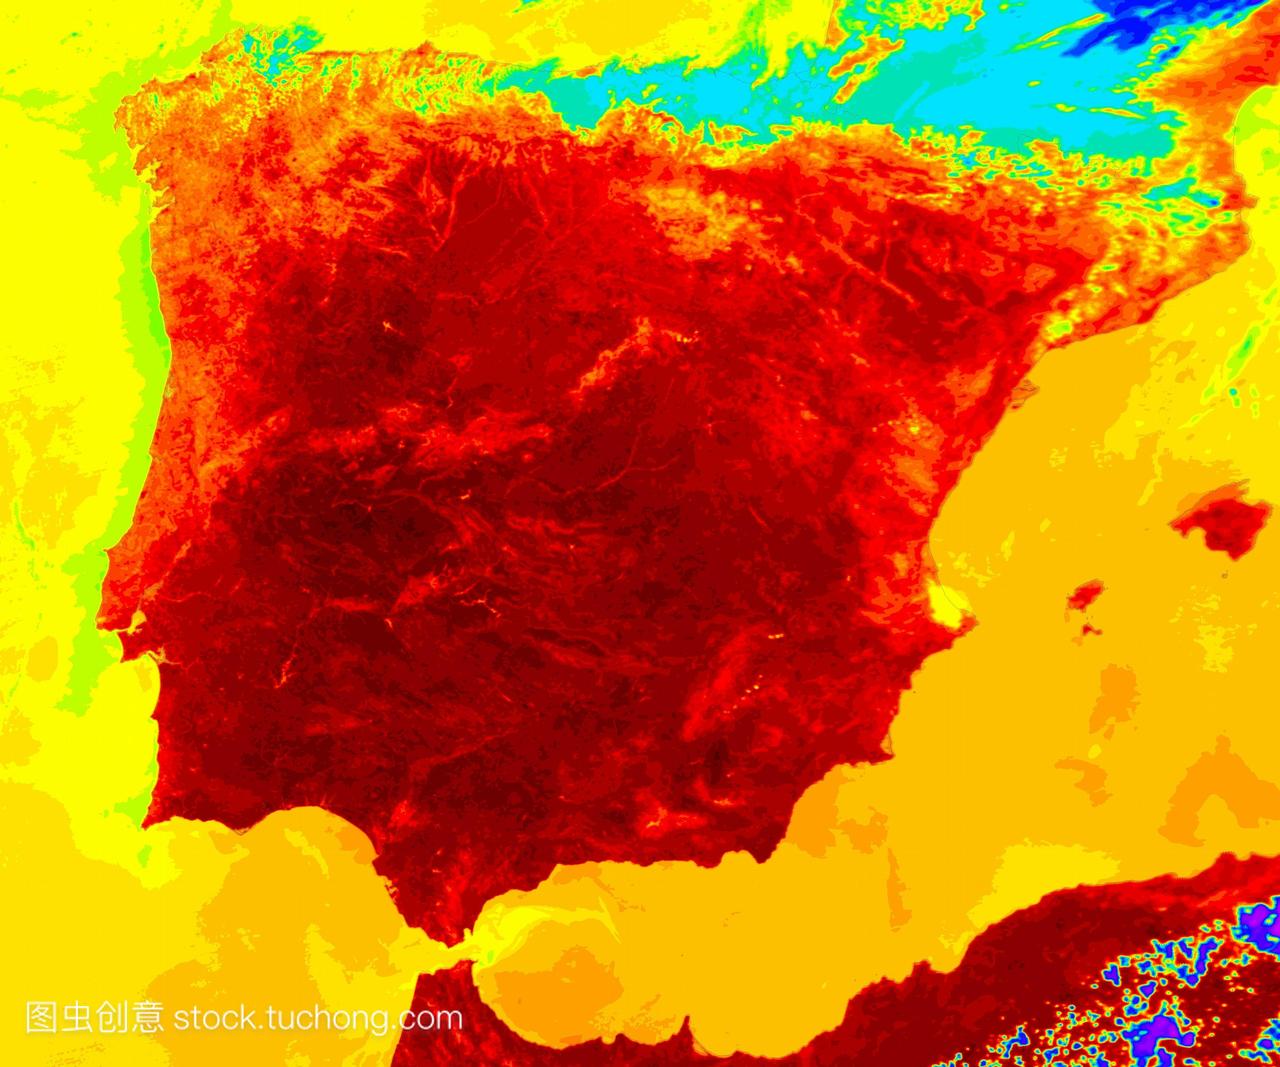 西班牙的热浪。2004年夏天,受热浪影响的西班